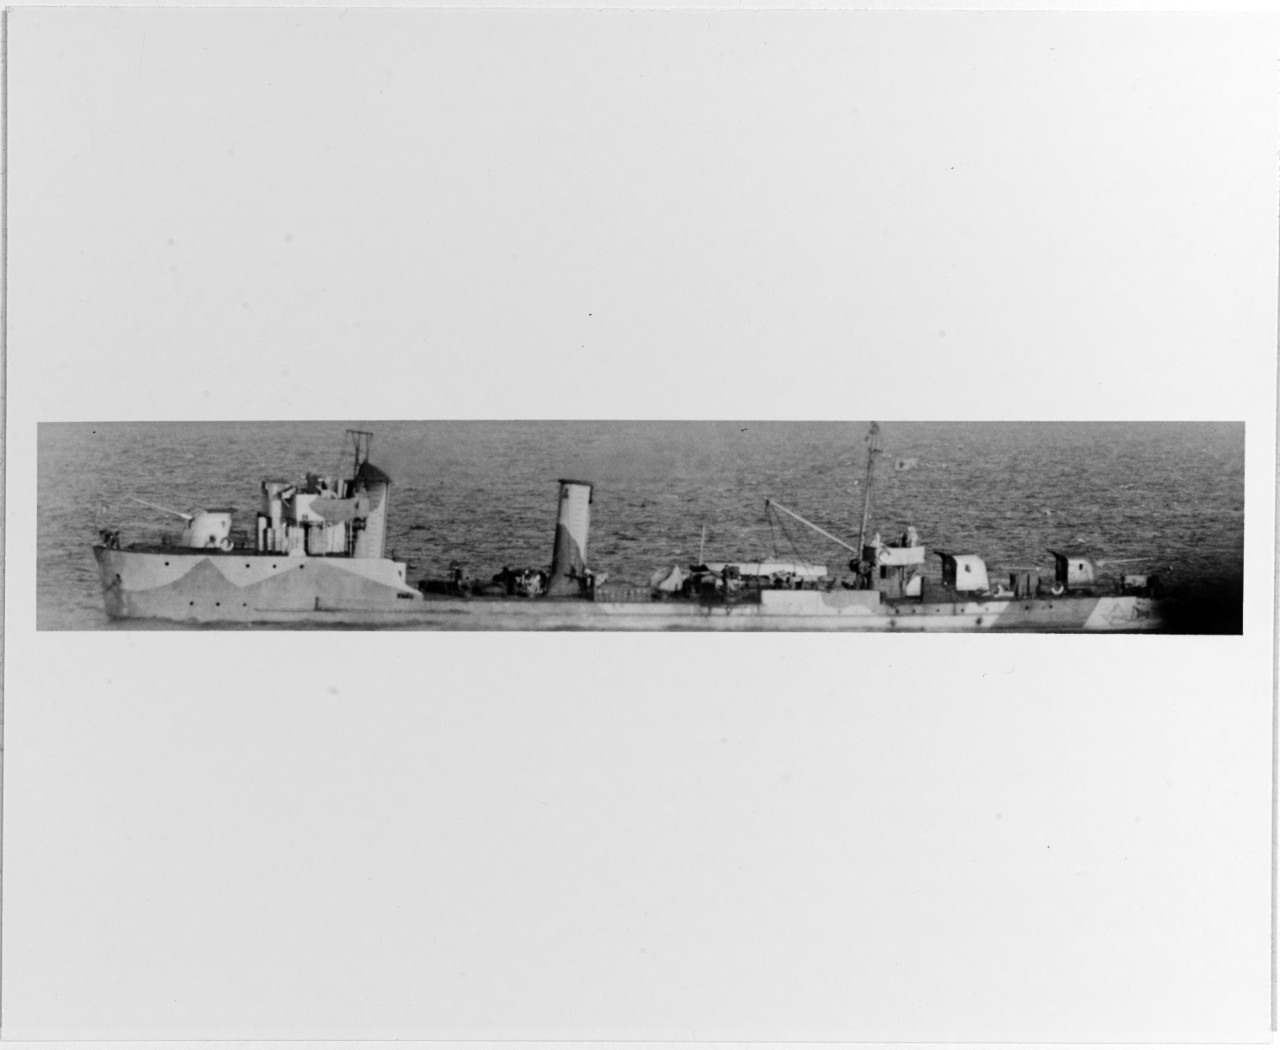 KONSTRUKTOR (Soviet torpedo boat, 1906-circa 1946)